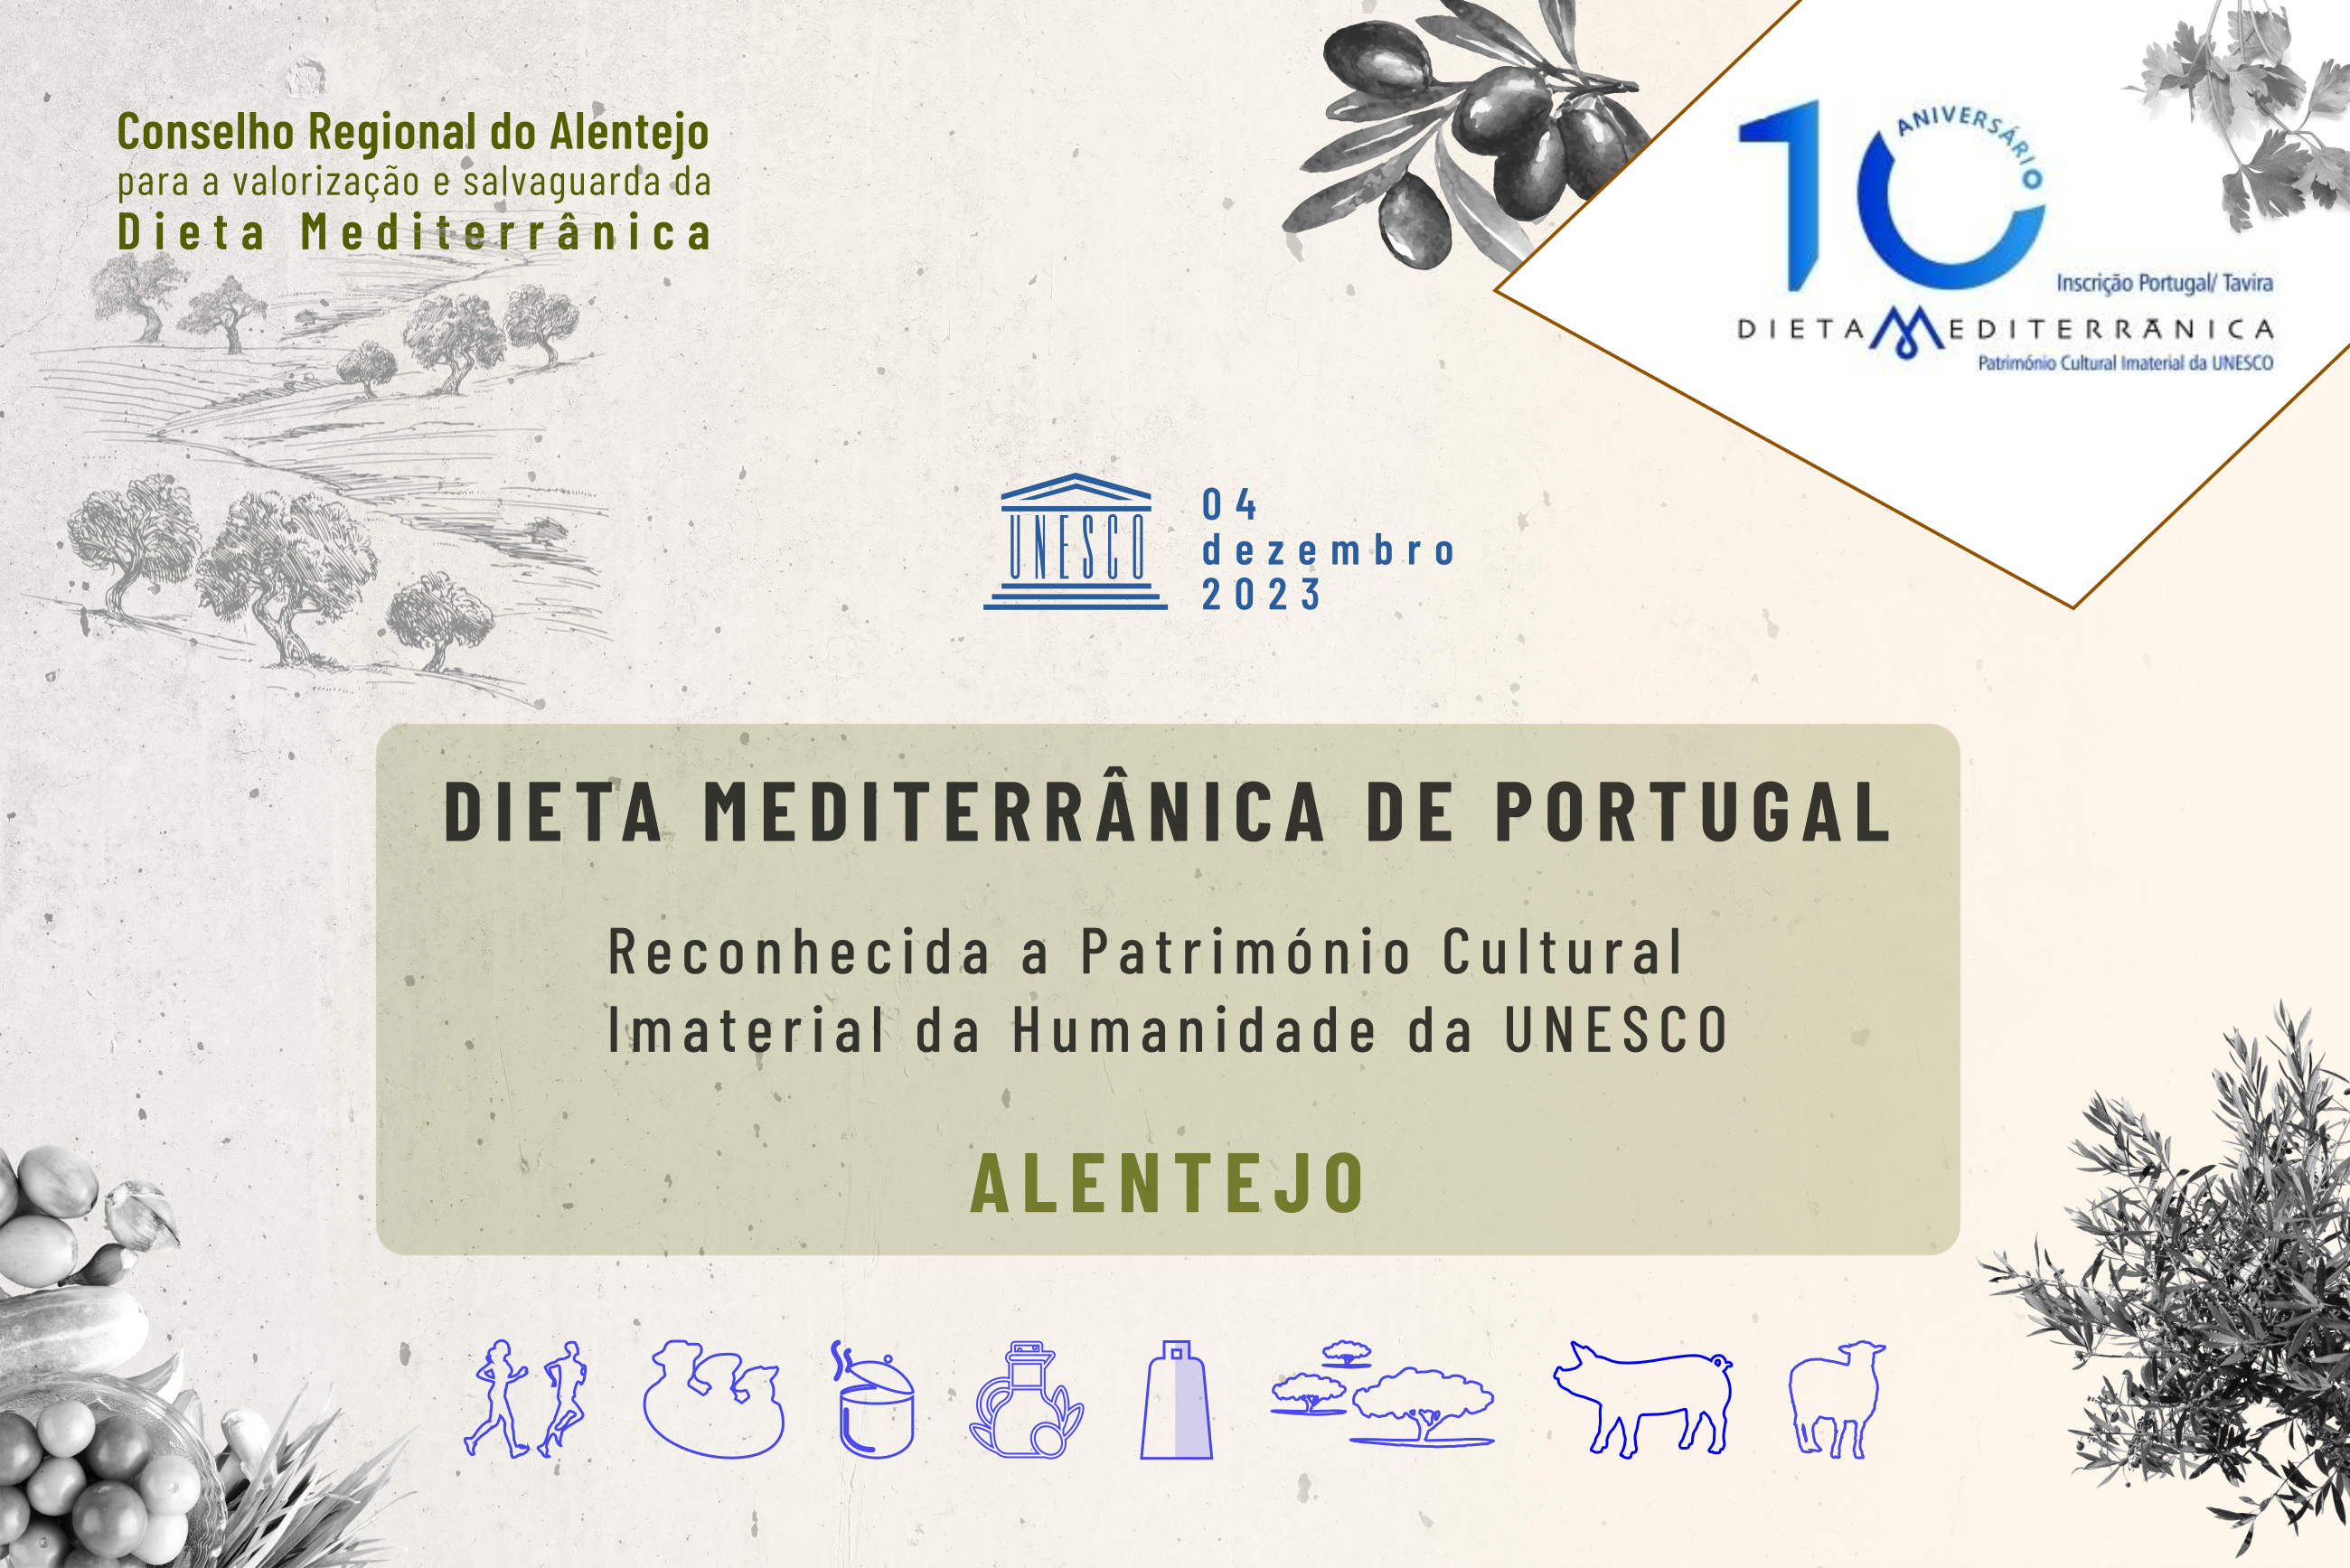 10 anos da inscrição portuguesa da Dieta Mediterrânica na UNESCO